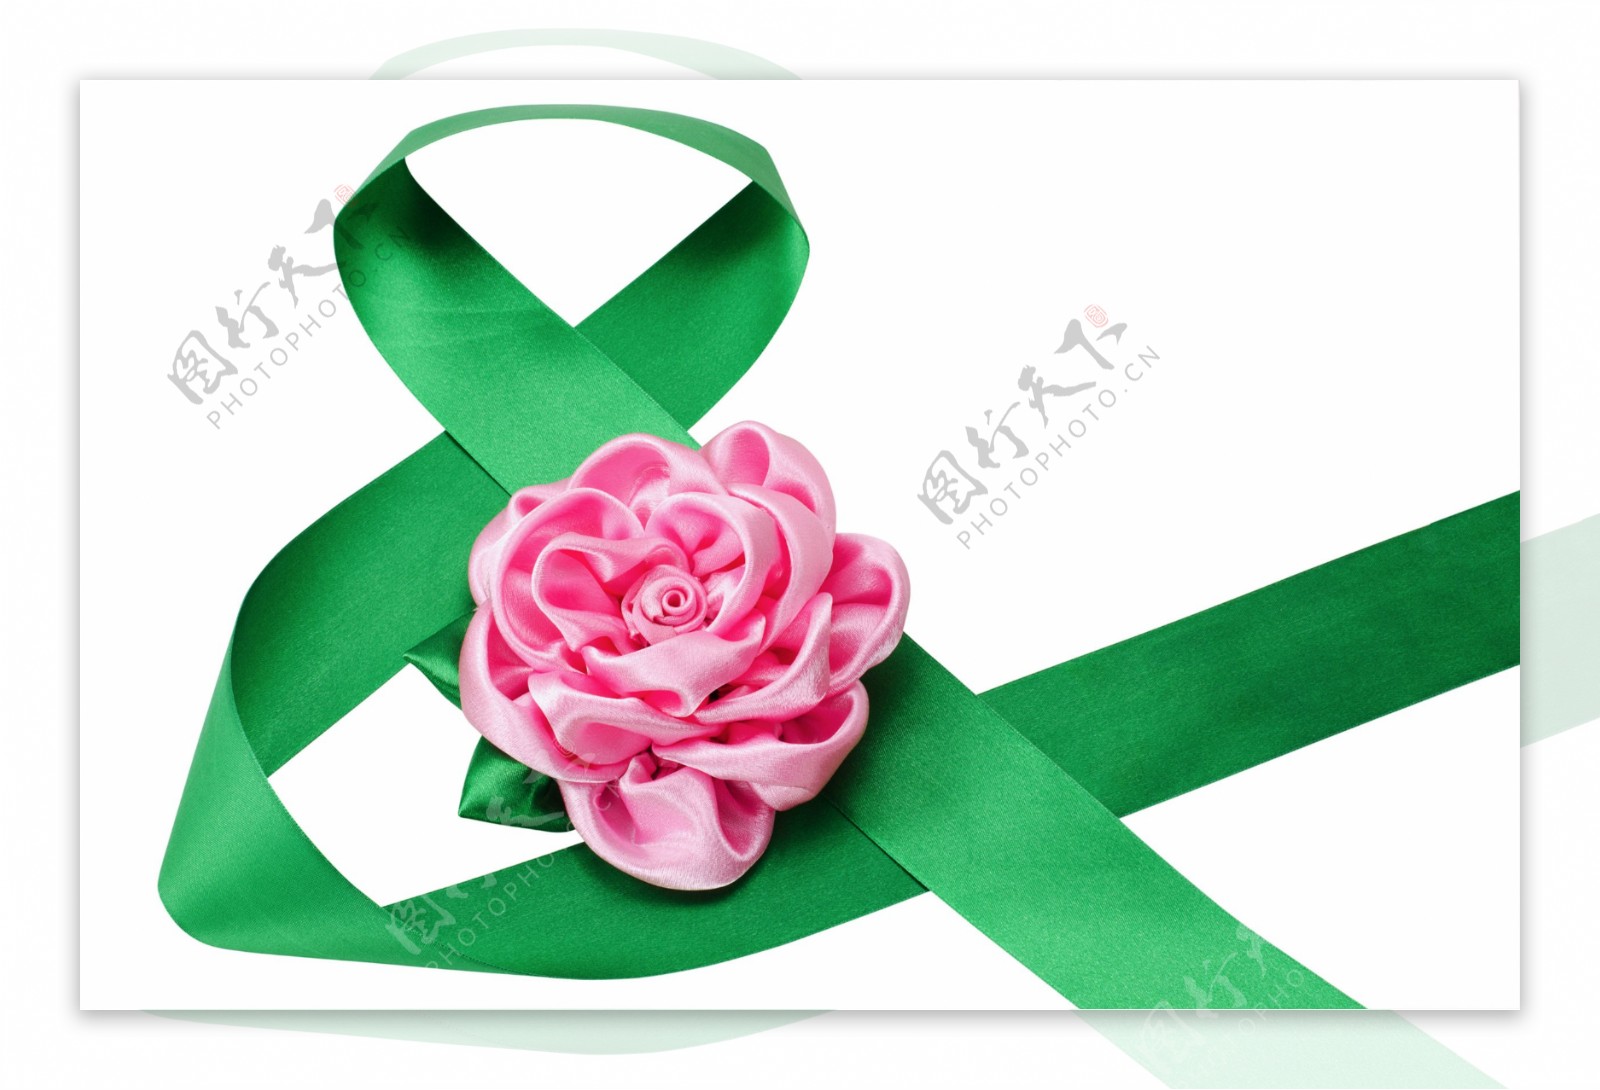 绿色丝带和粉色花朵图片